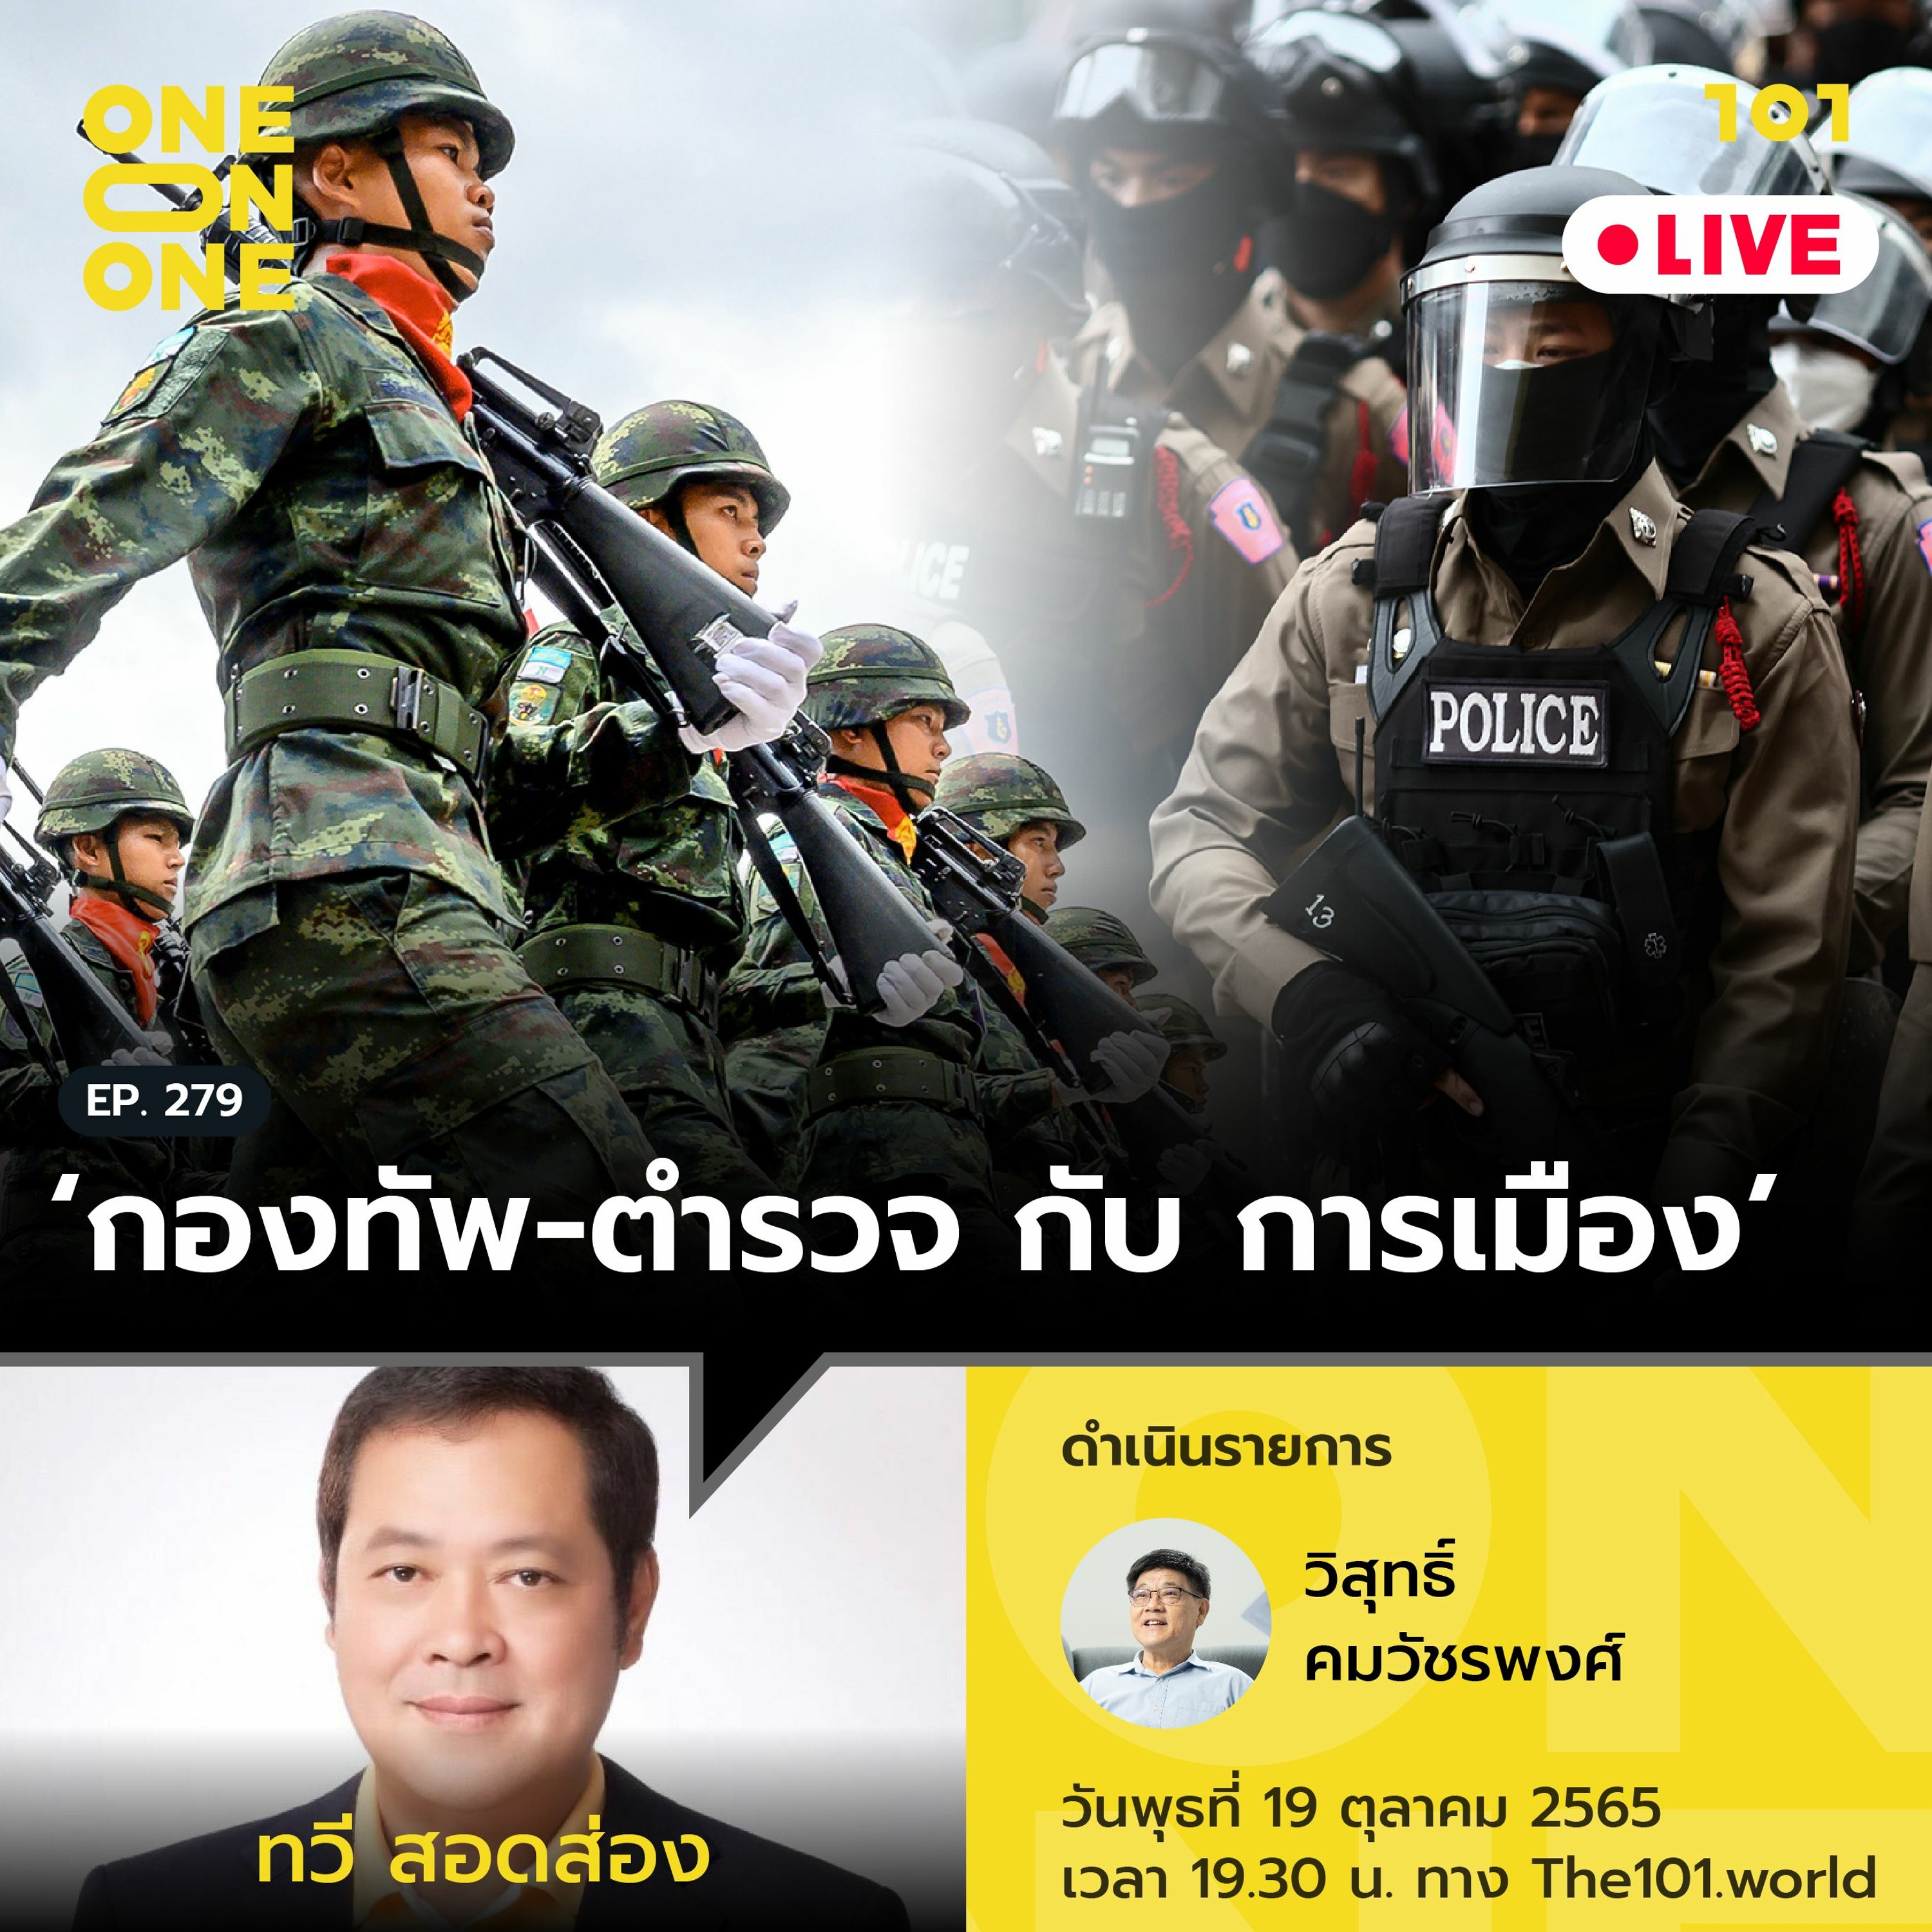 ‘กองทัพ-ตำรวจ กับ การเมือง’ กับ ทวี สอดส่อง | 101 One-on-One Ep.279